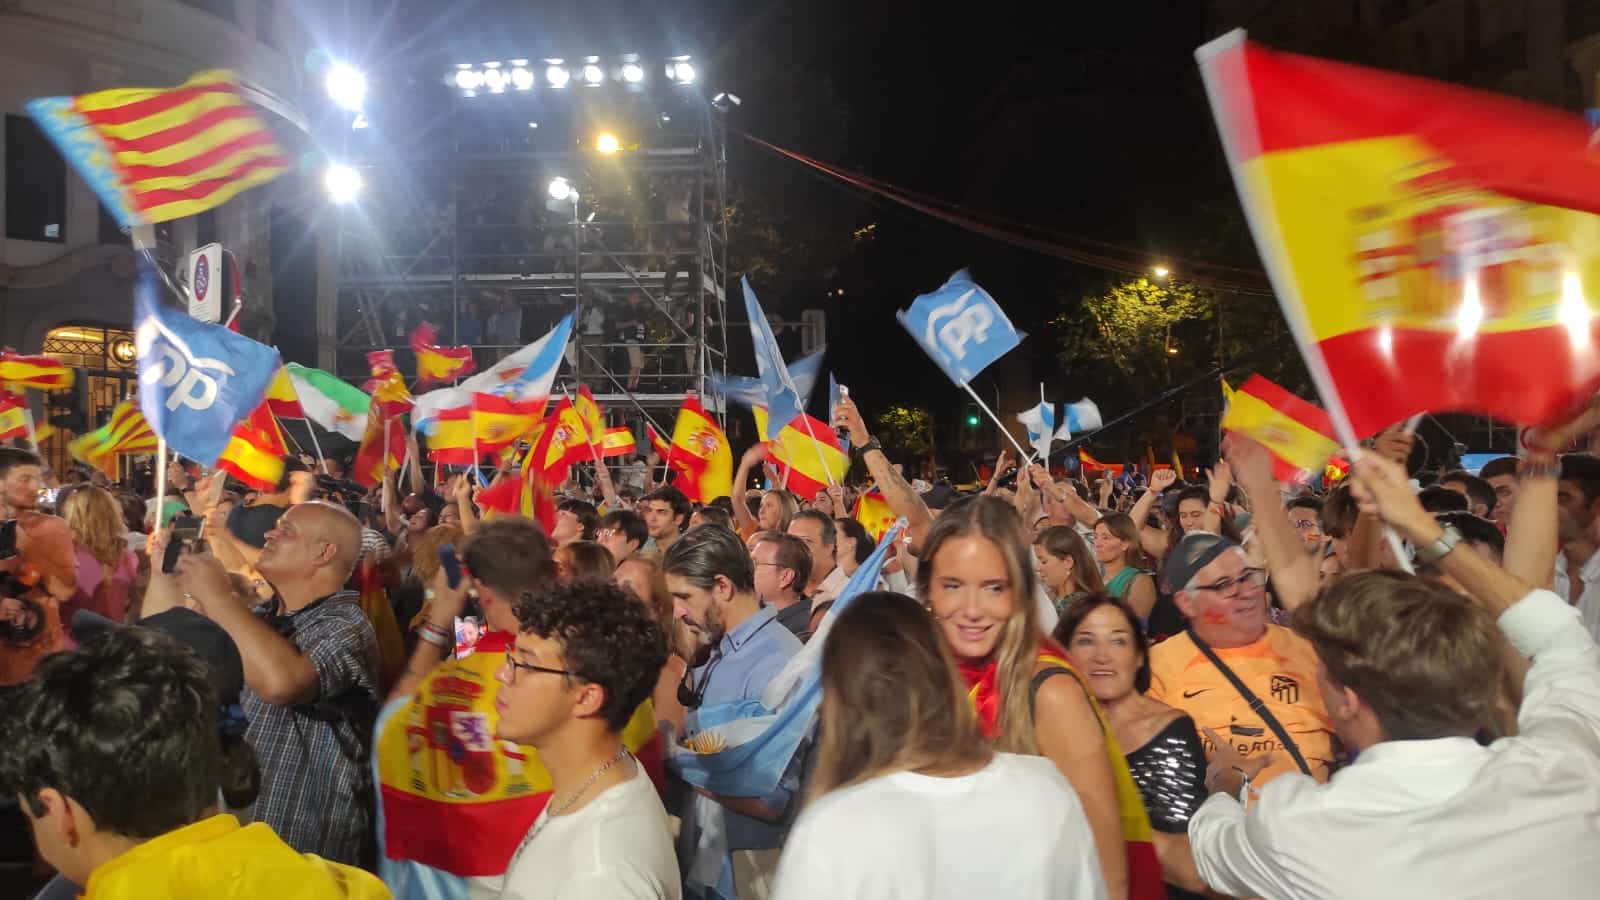 In Spagna, hanno vinto (quasi) tutti. L'analisi elettorale e gli scenari